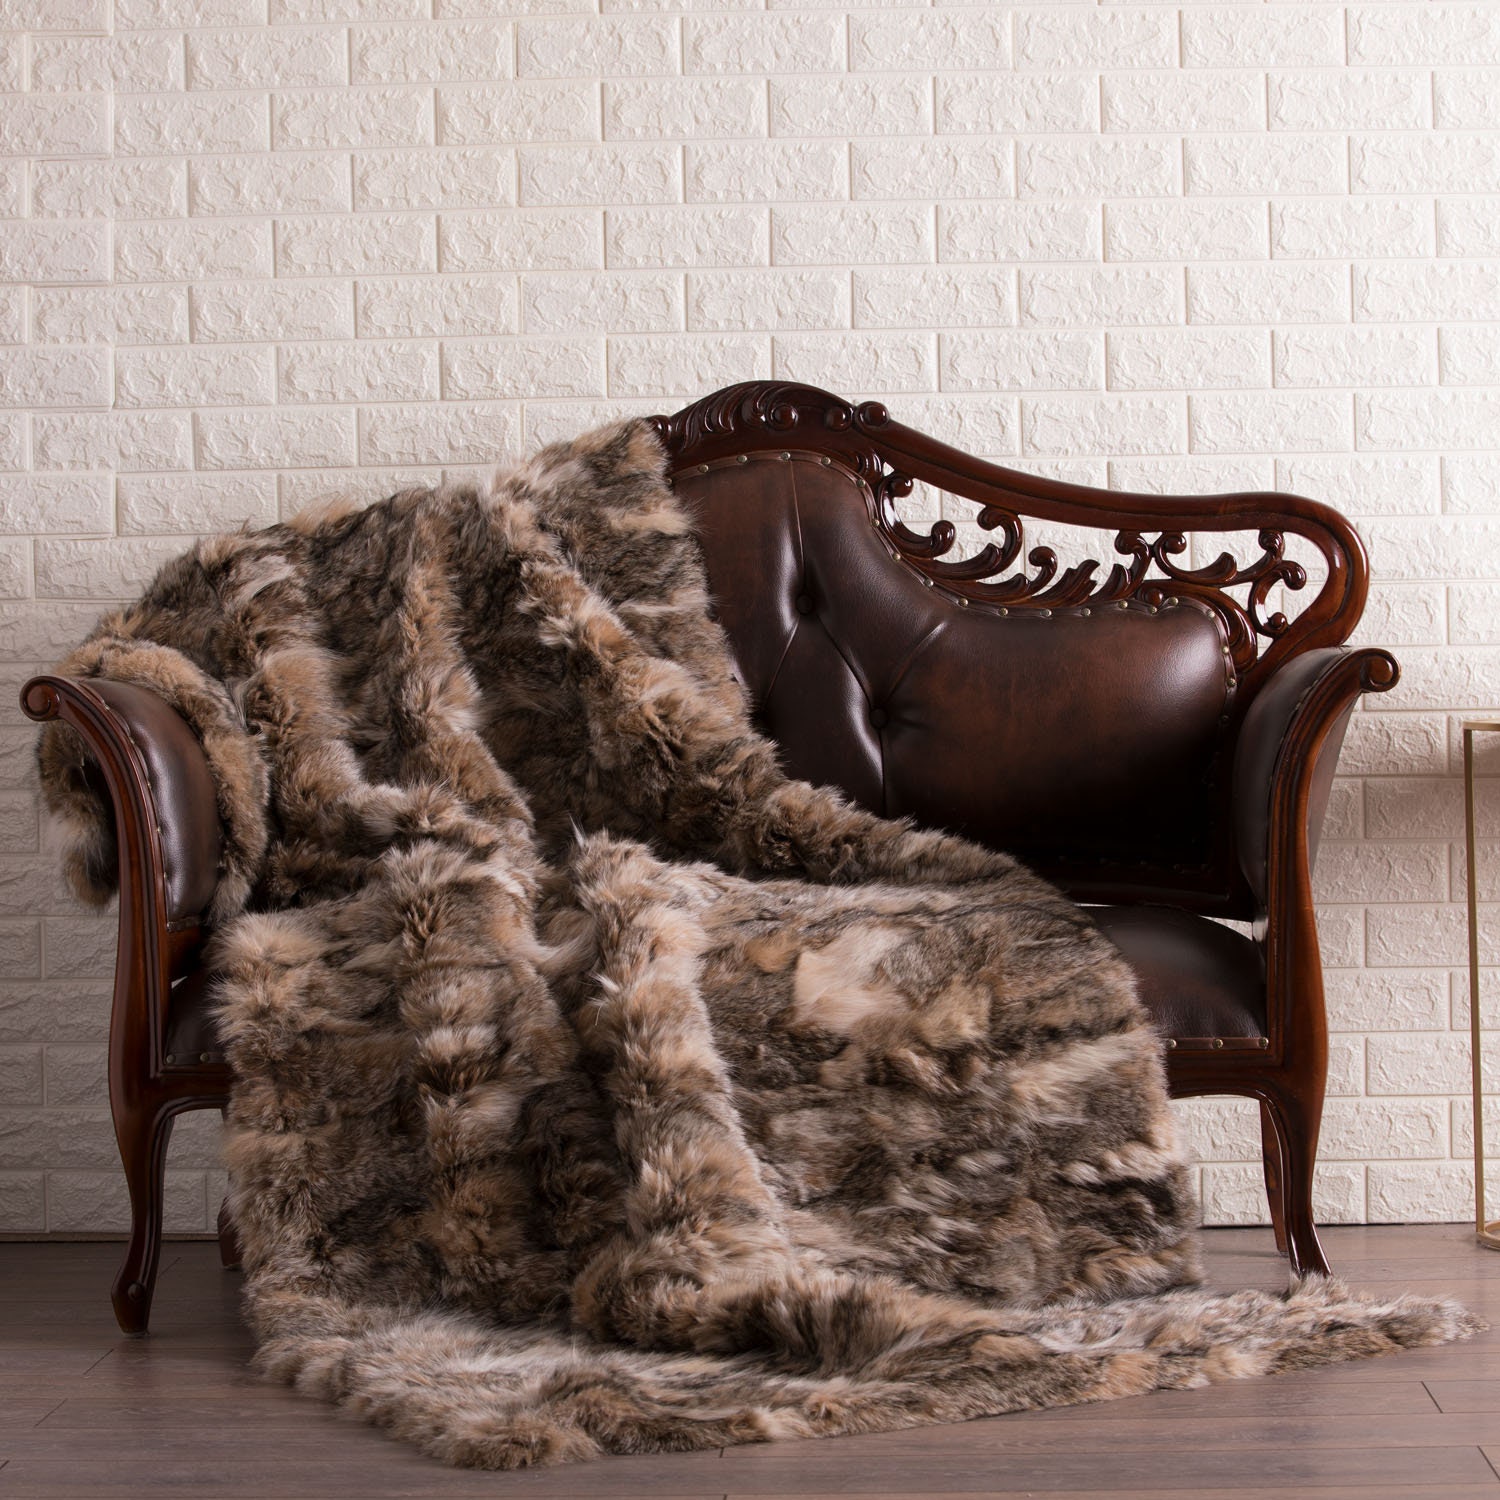 Full Pelt Red Fox Fur Blanket for Luxurious Home Decor at